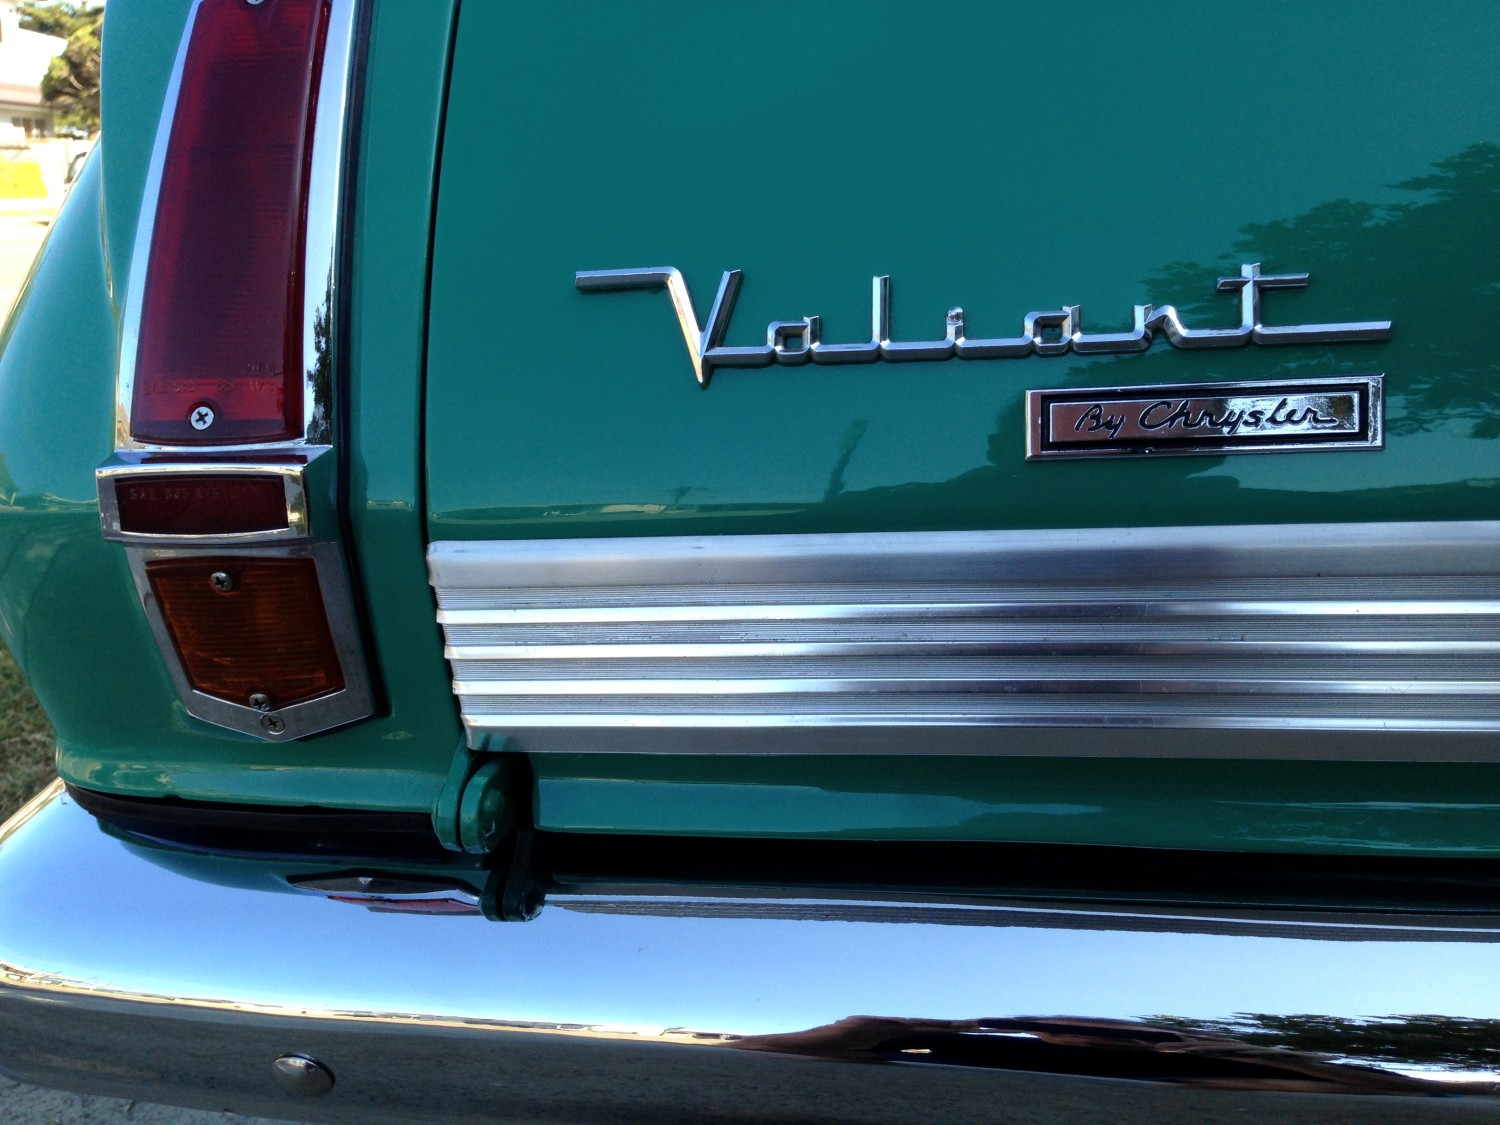 1965 Chrysler VALIANT